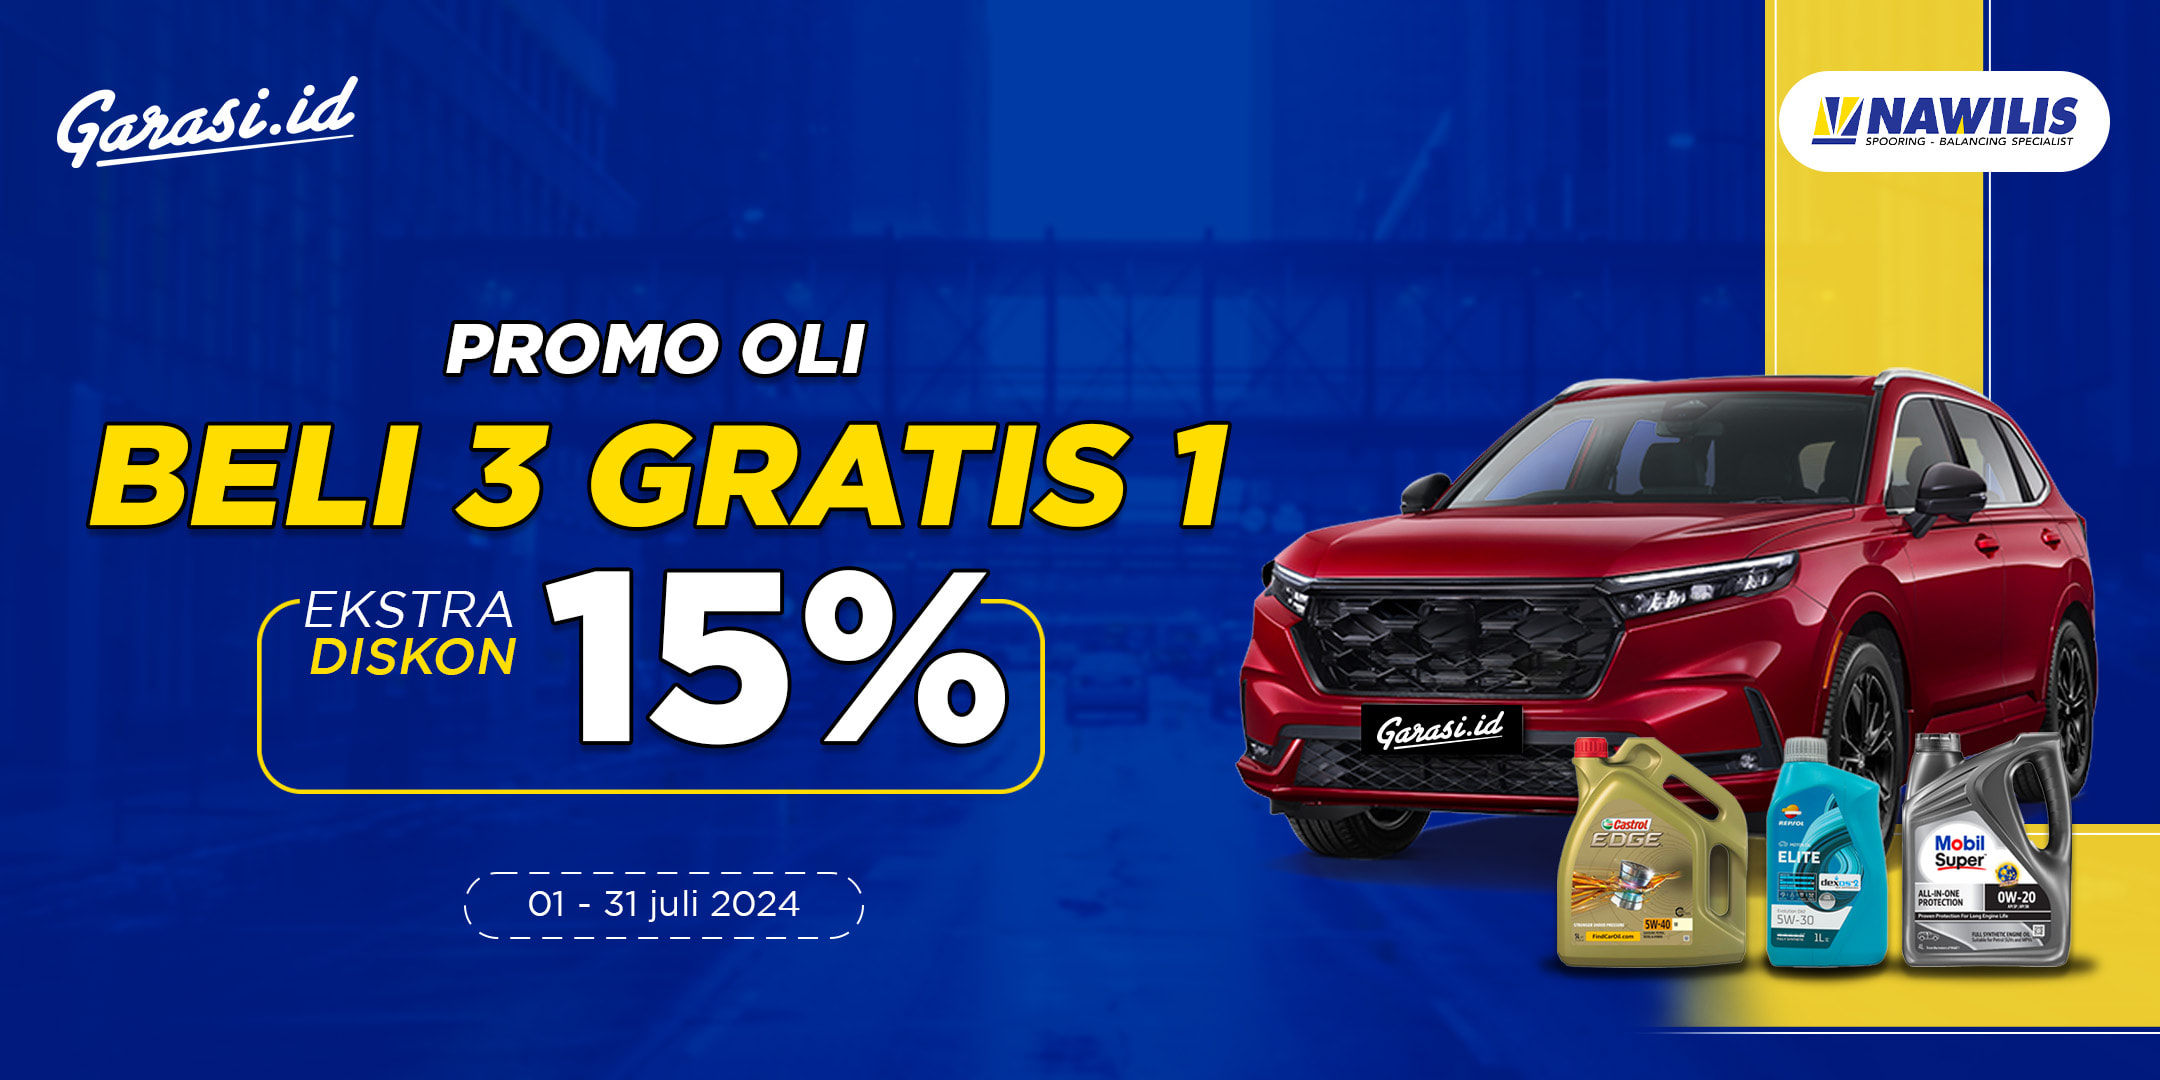 Spesial Promo Ganti Oli **Buy 3 Get 1 + Discount 15%** hanya di Bengkel Nawilis!